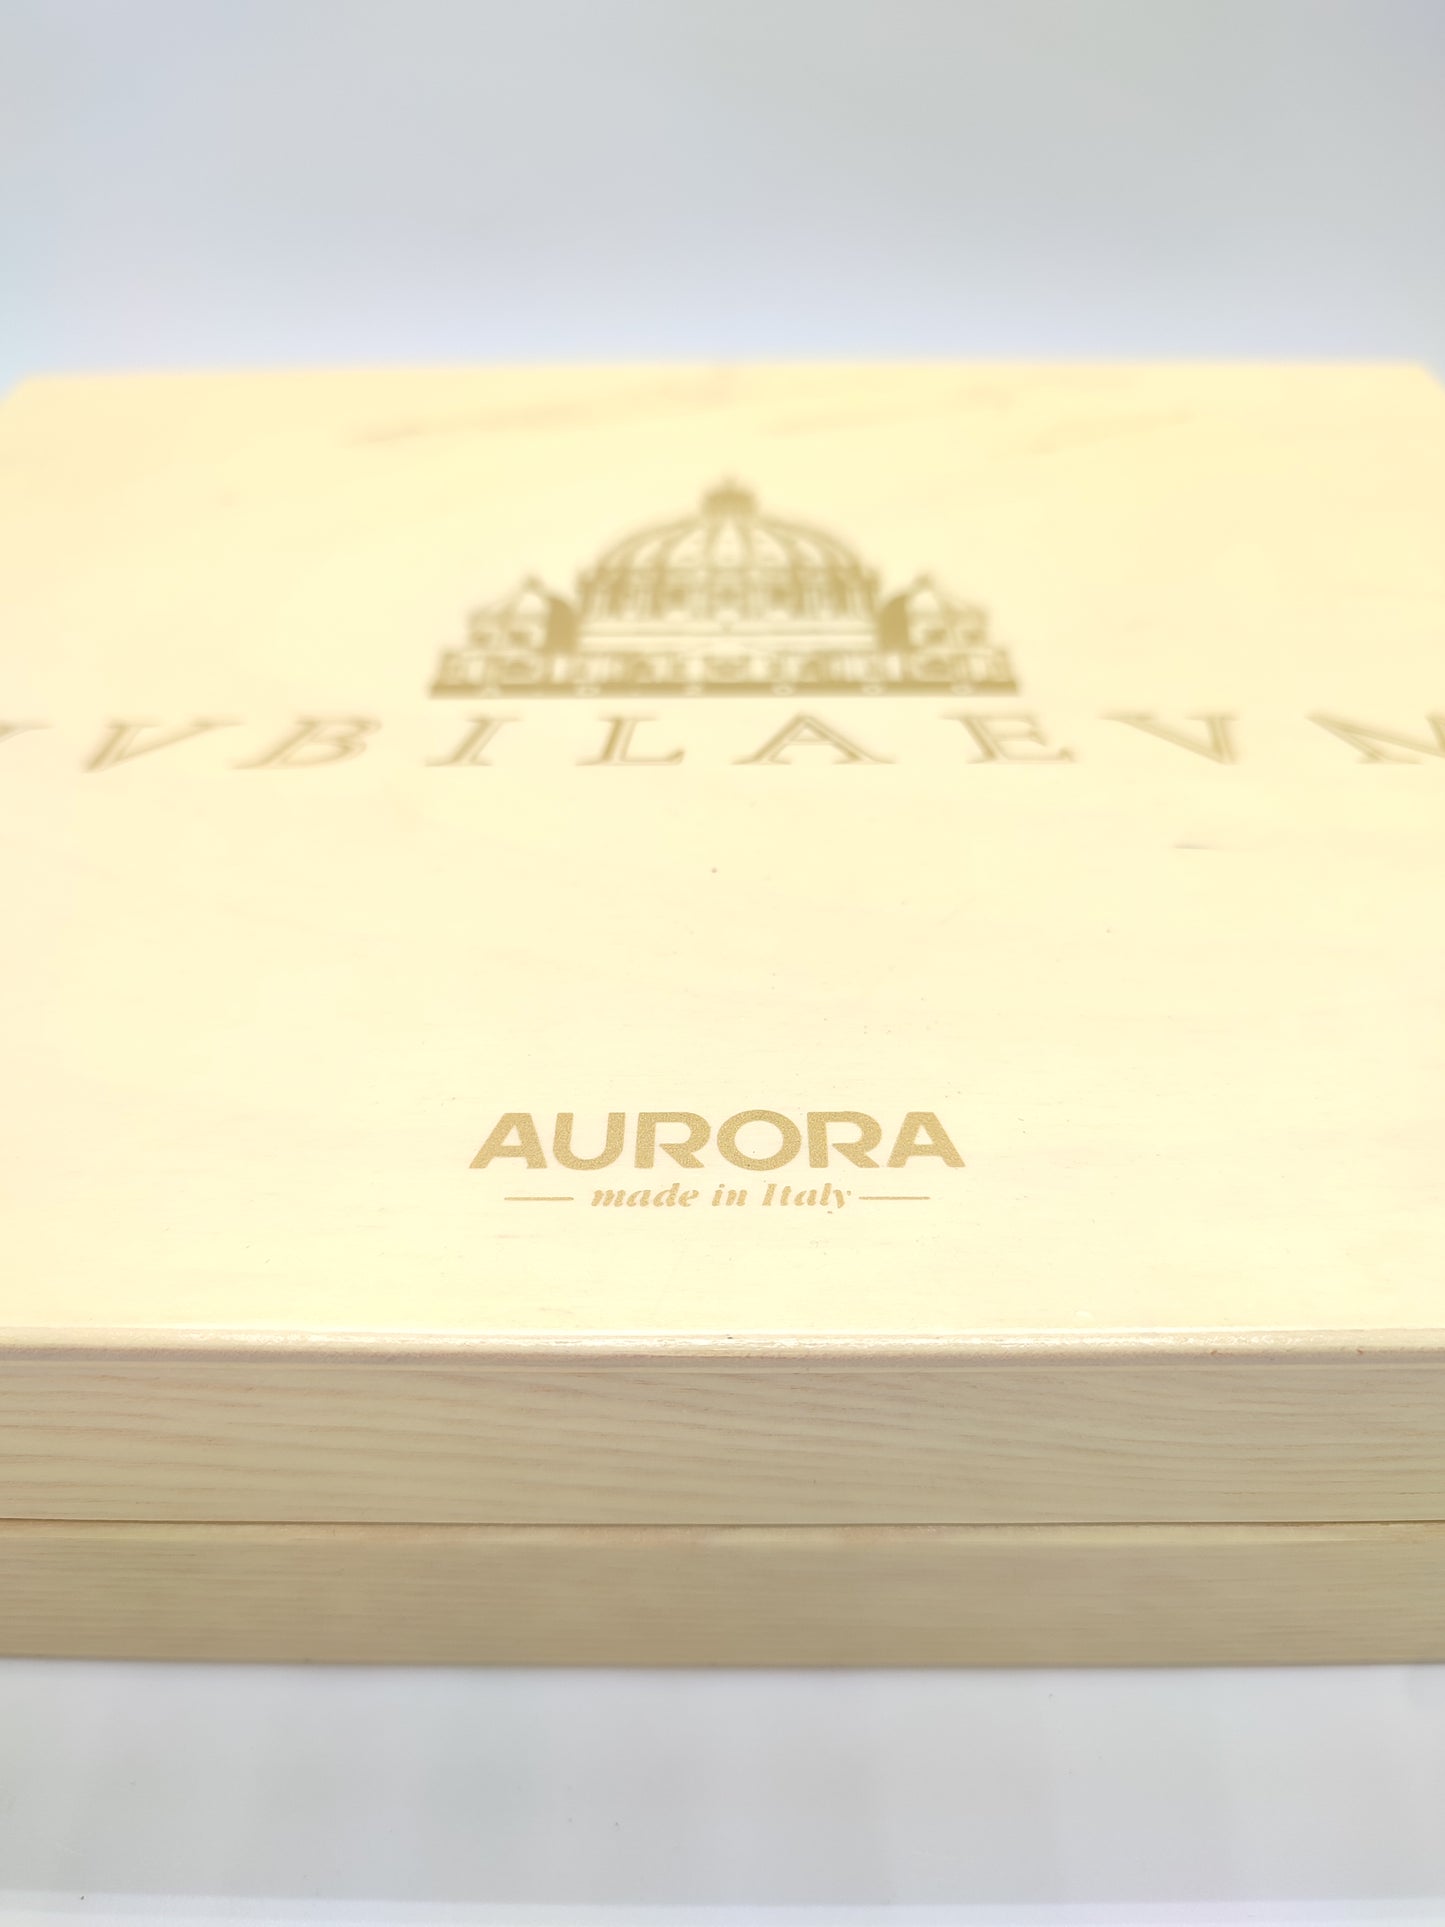 Cofanetto Penna Aurora L.edition Giubileo A.D. 2000 in oro 1607/2000pz.